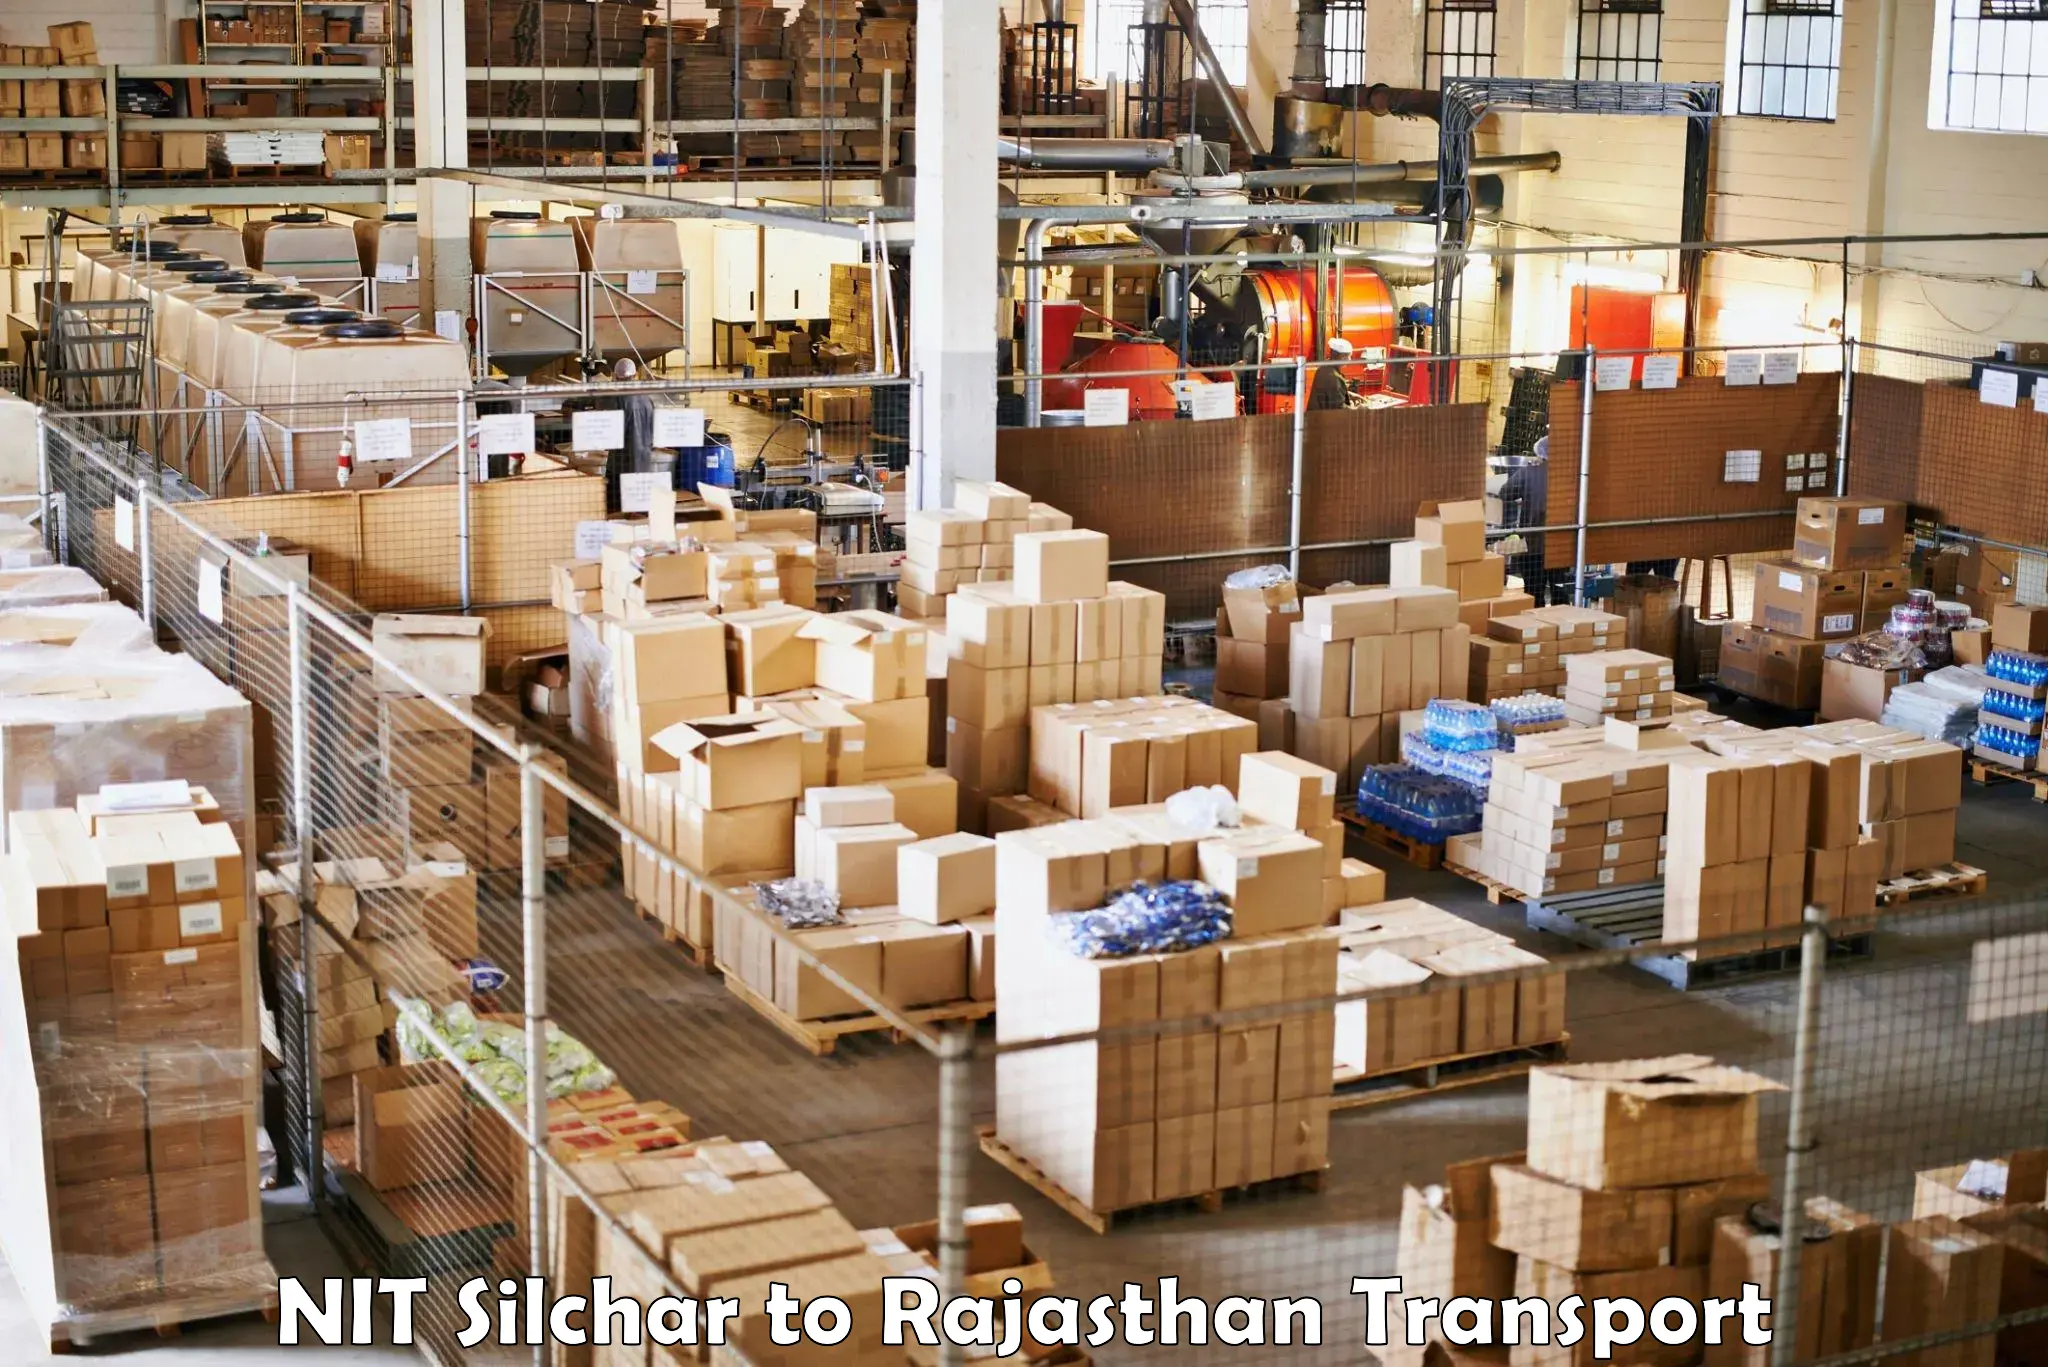 Furniture transport service NIT Silchar to Asind